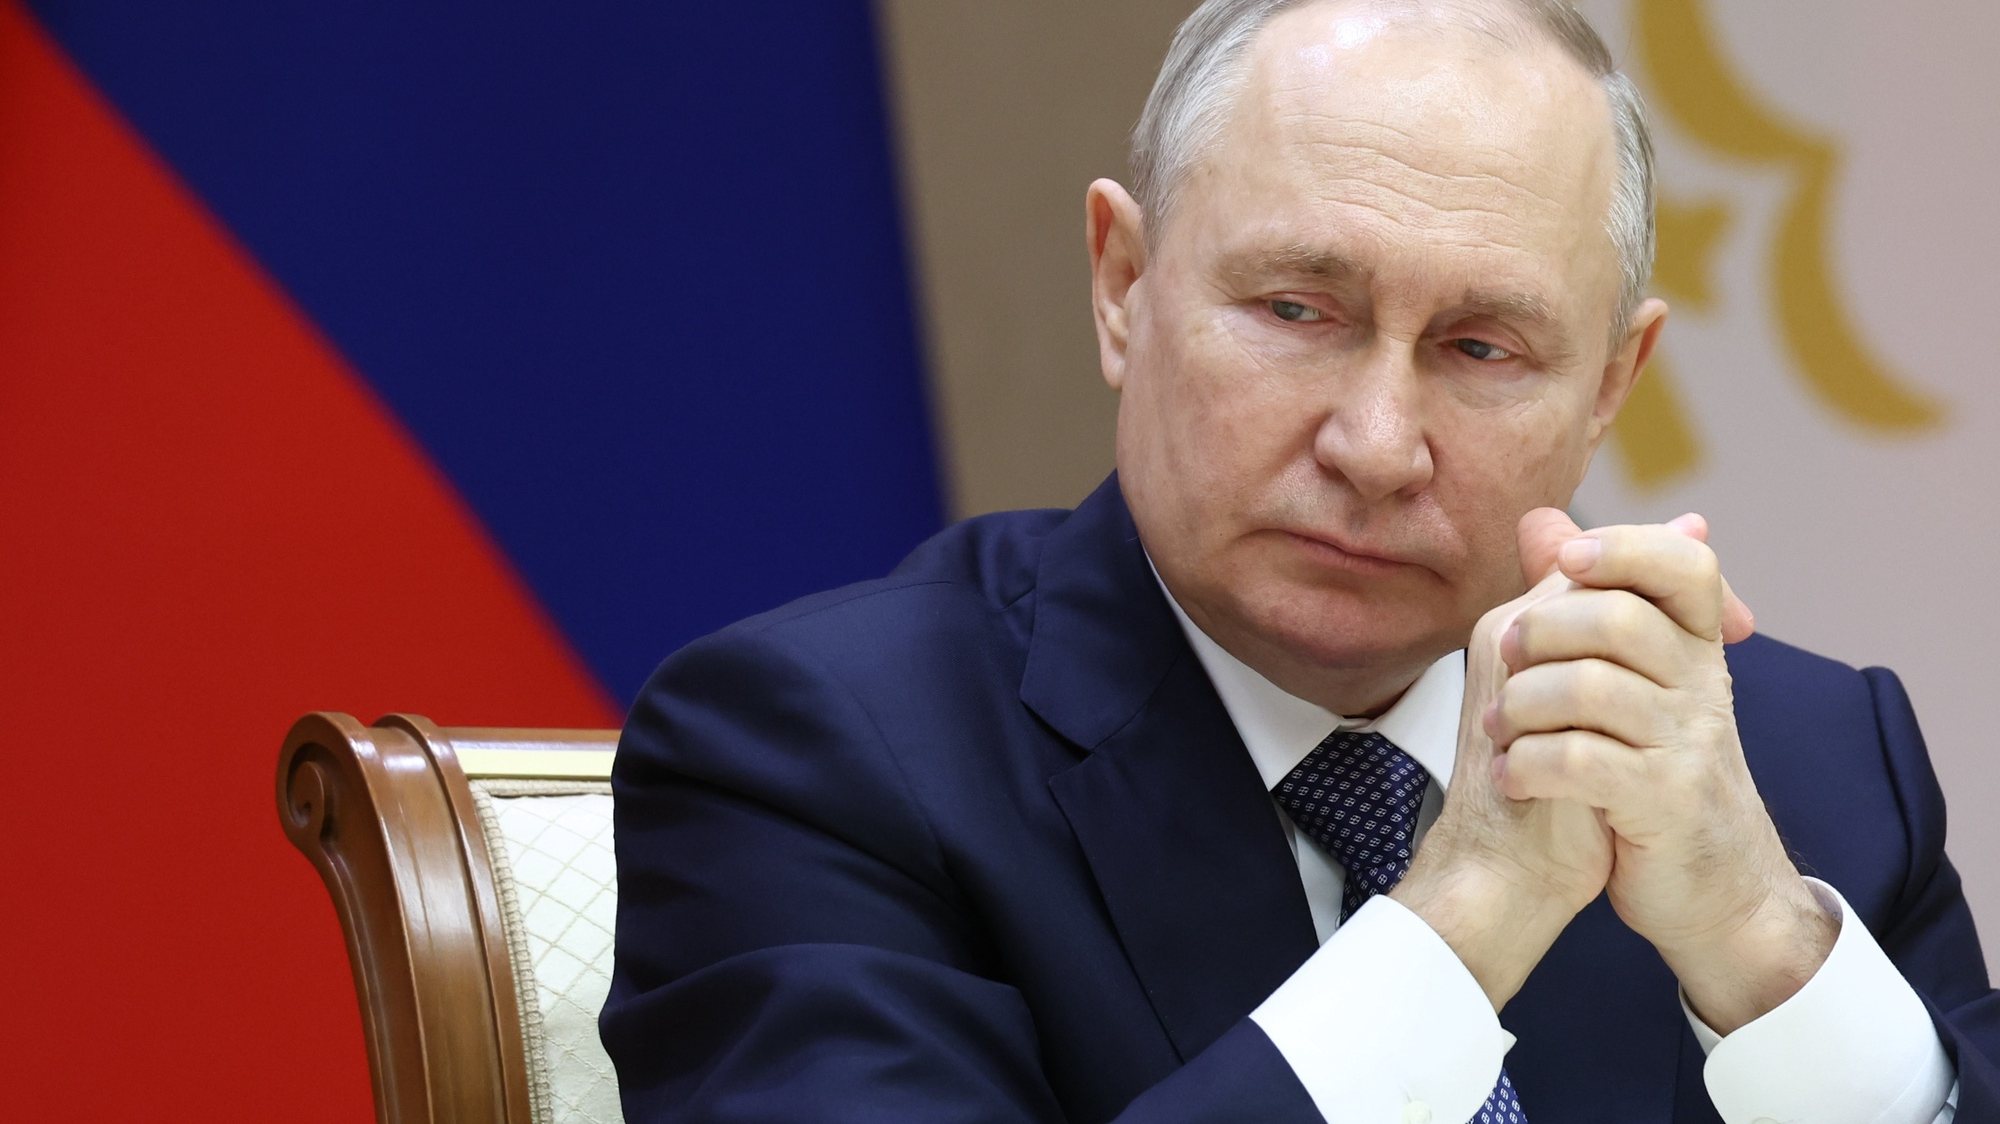 Vitória é garantida, não tenho dúvidas, acredita o Presidente Putin - SIC  Notícias